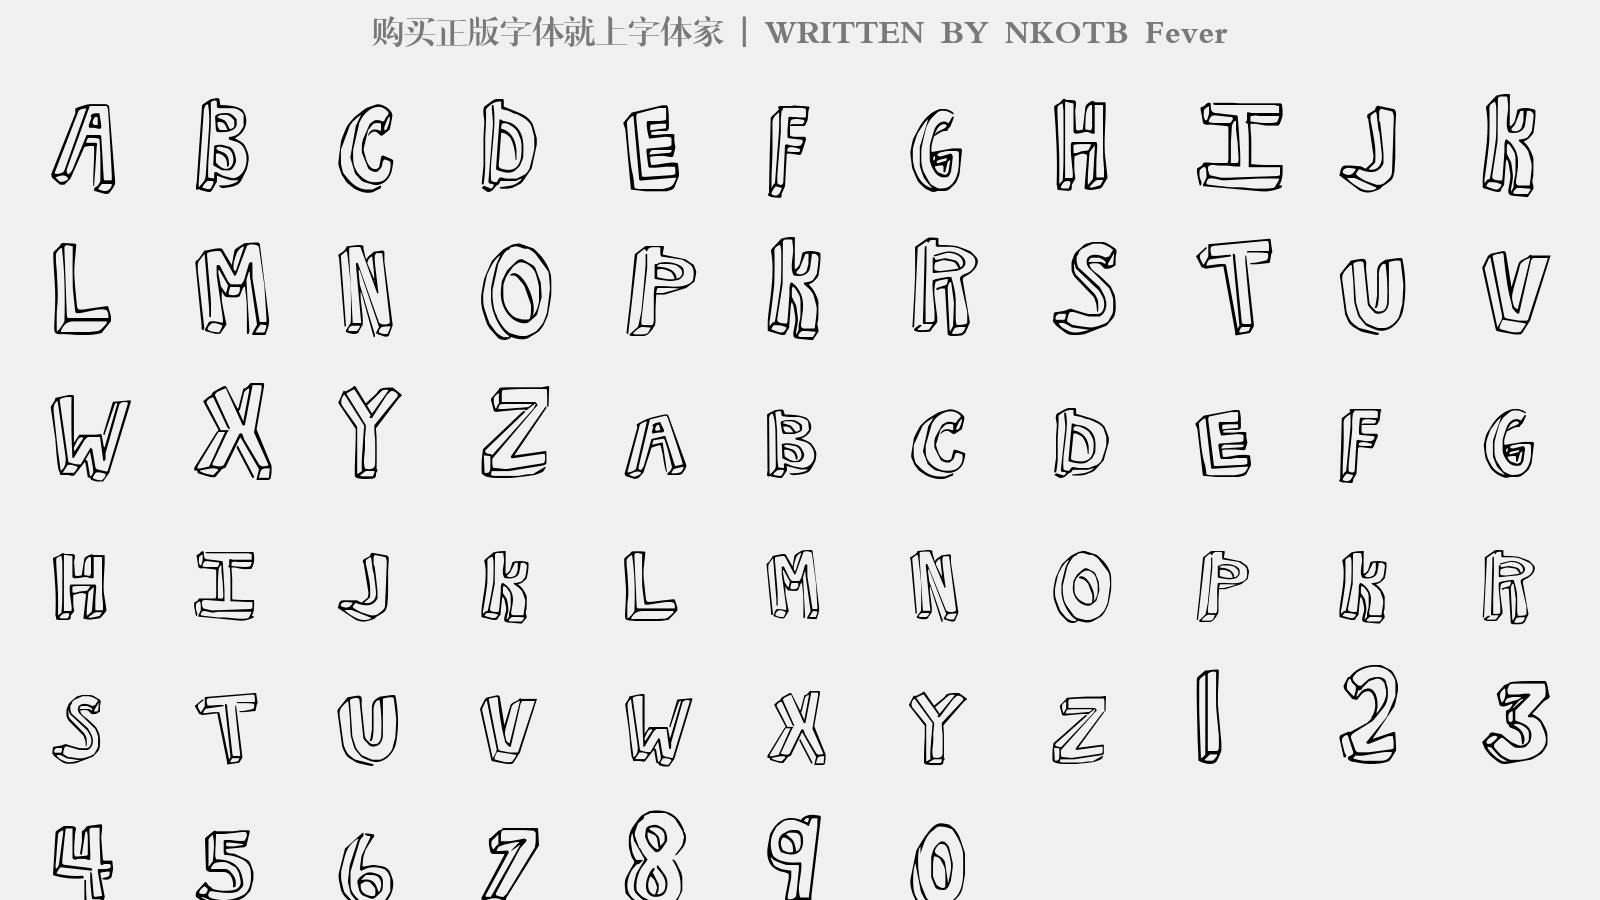 NKOTB Fever - 大写字母/小写字母/数字